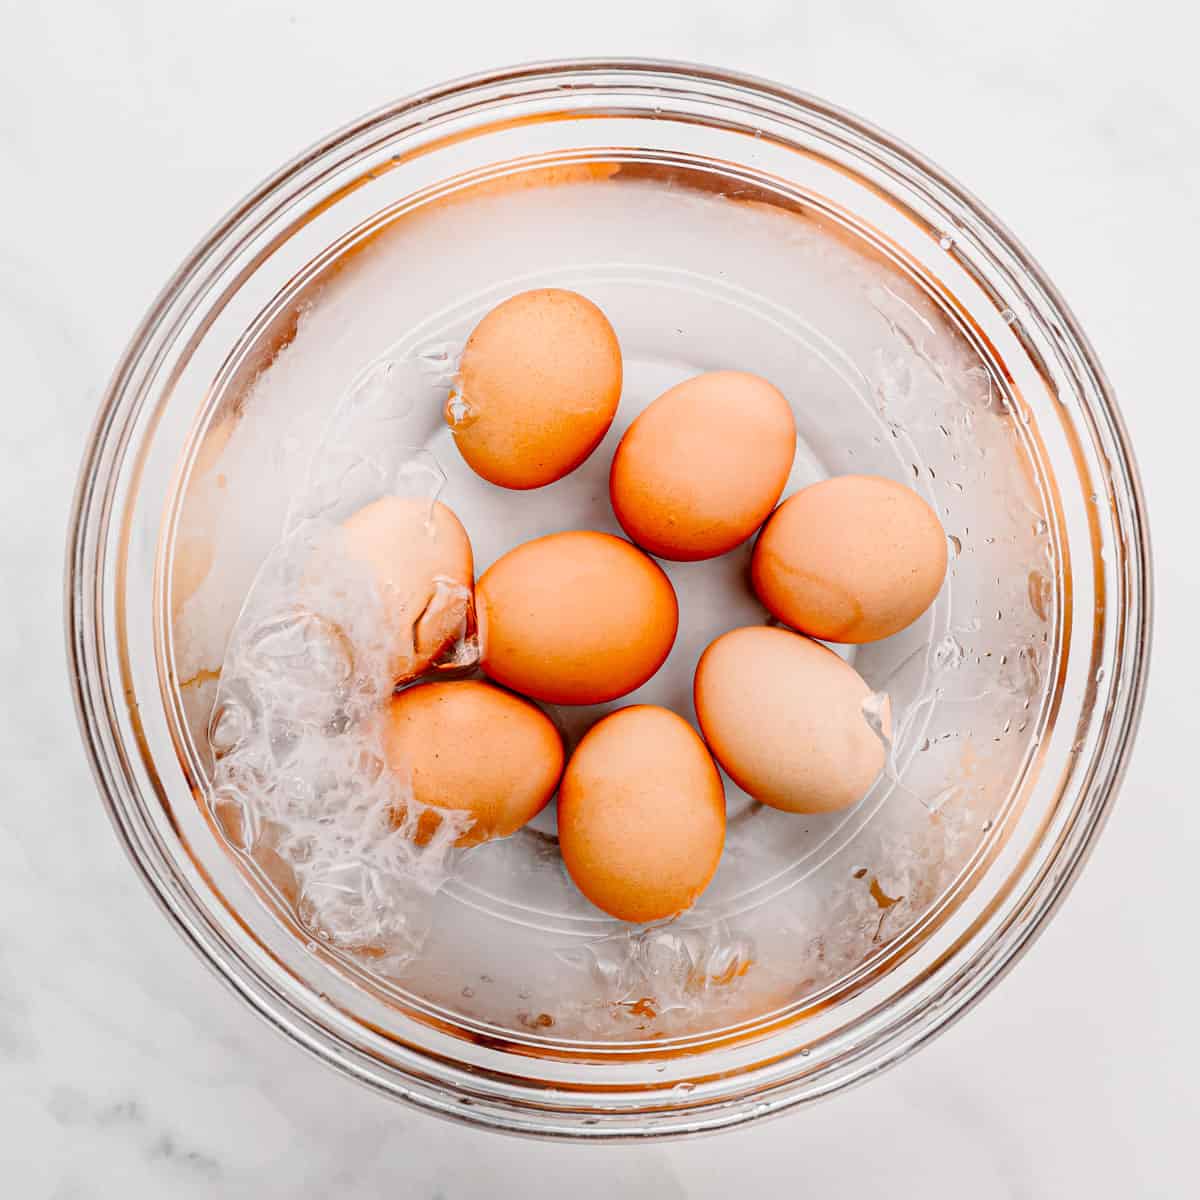 eggs in an iced cold bath.